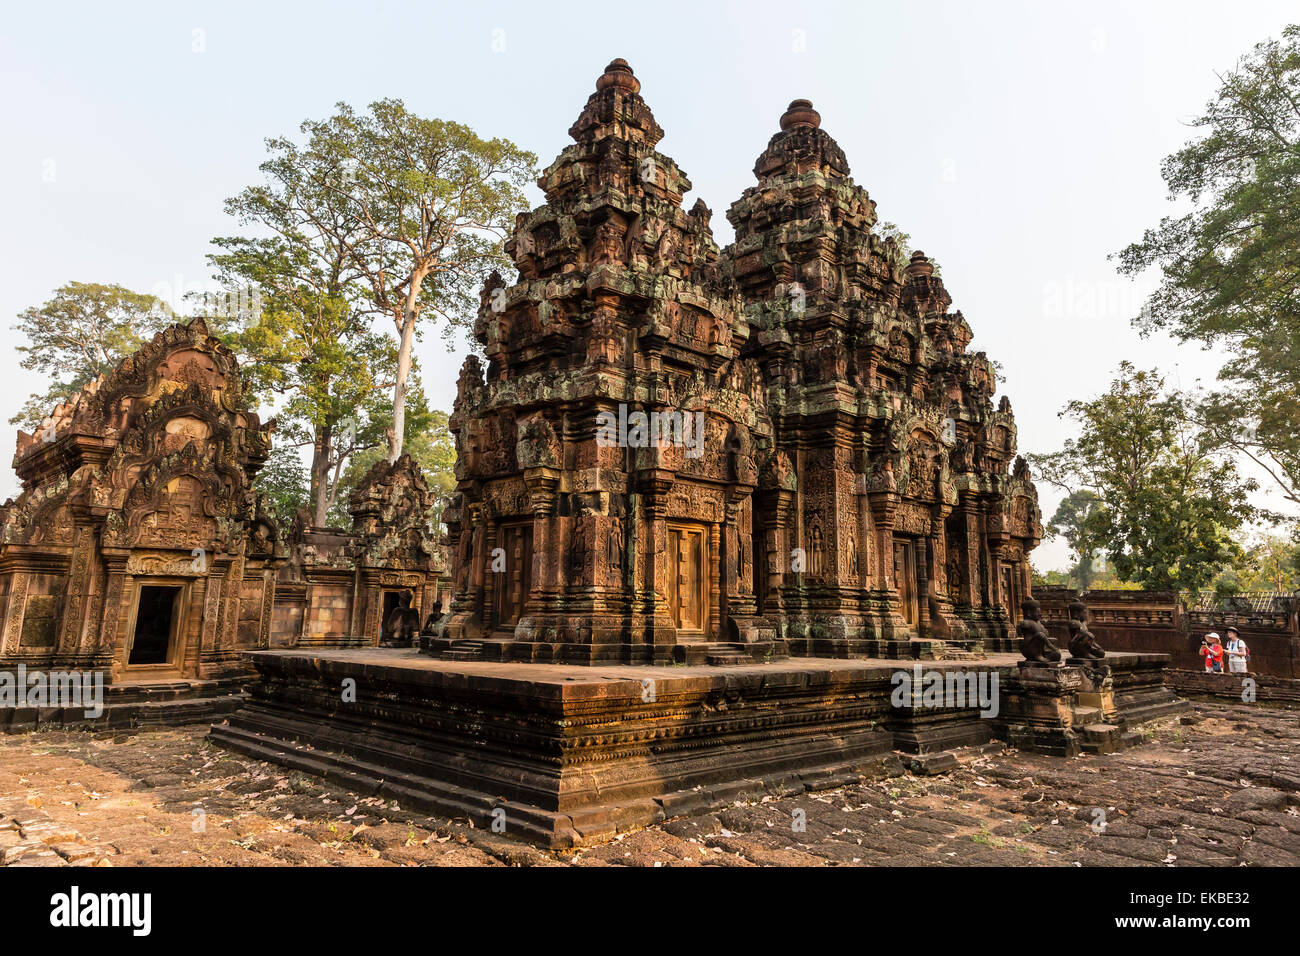 Sculptures en grès rouge ornée au Temple de Banteay Srei à Angkor, l'UNESCO, Siem Reap, Cambodge, Indochine, Asie du Sud-Est, l'Asie Banque D'Images